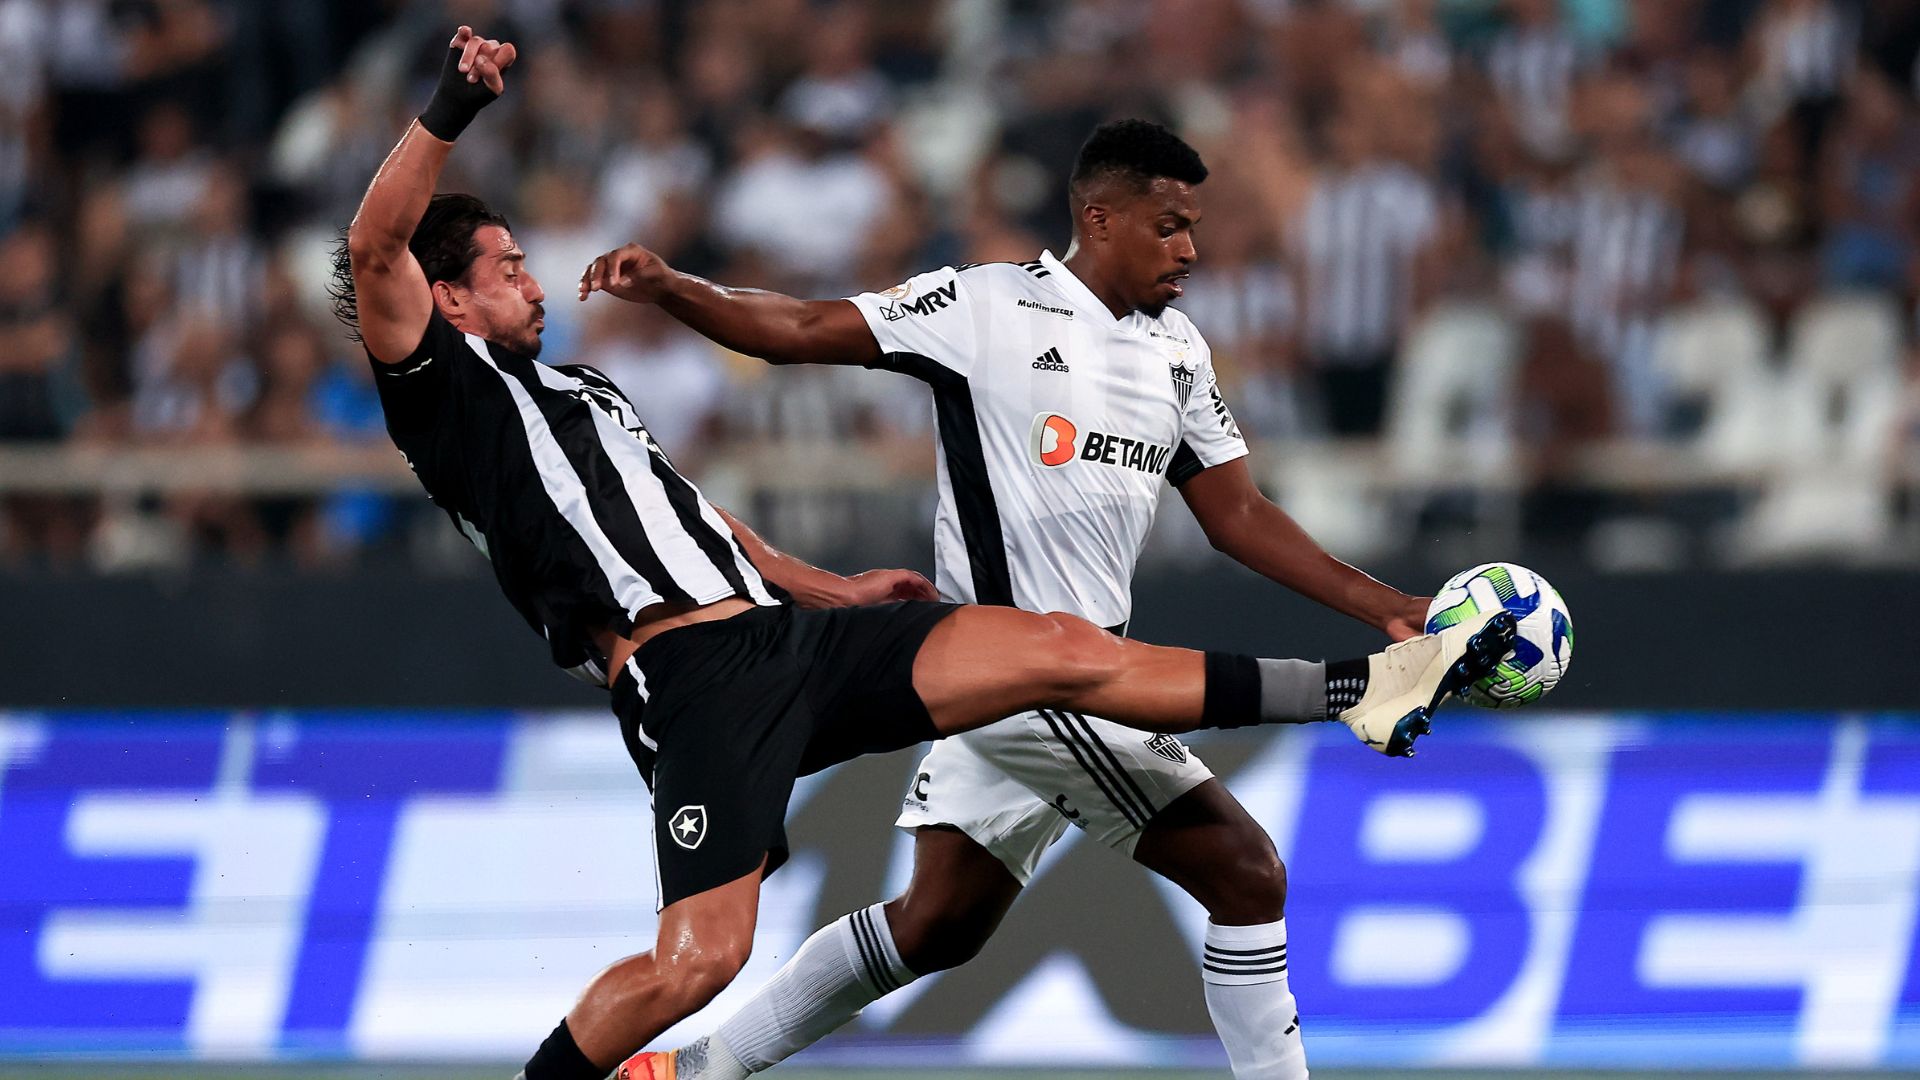 O Botafogo venceu o Atlético-MG por 2 a 0, na partida válida pelo primeiro turno (Crédito: Getty Images)